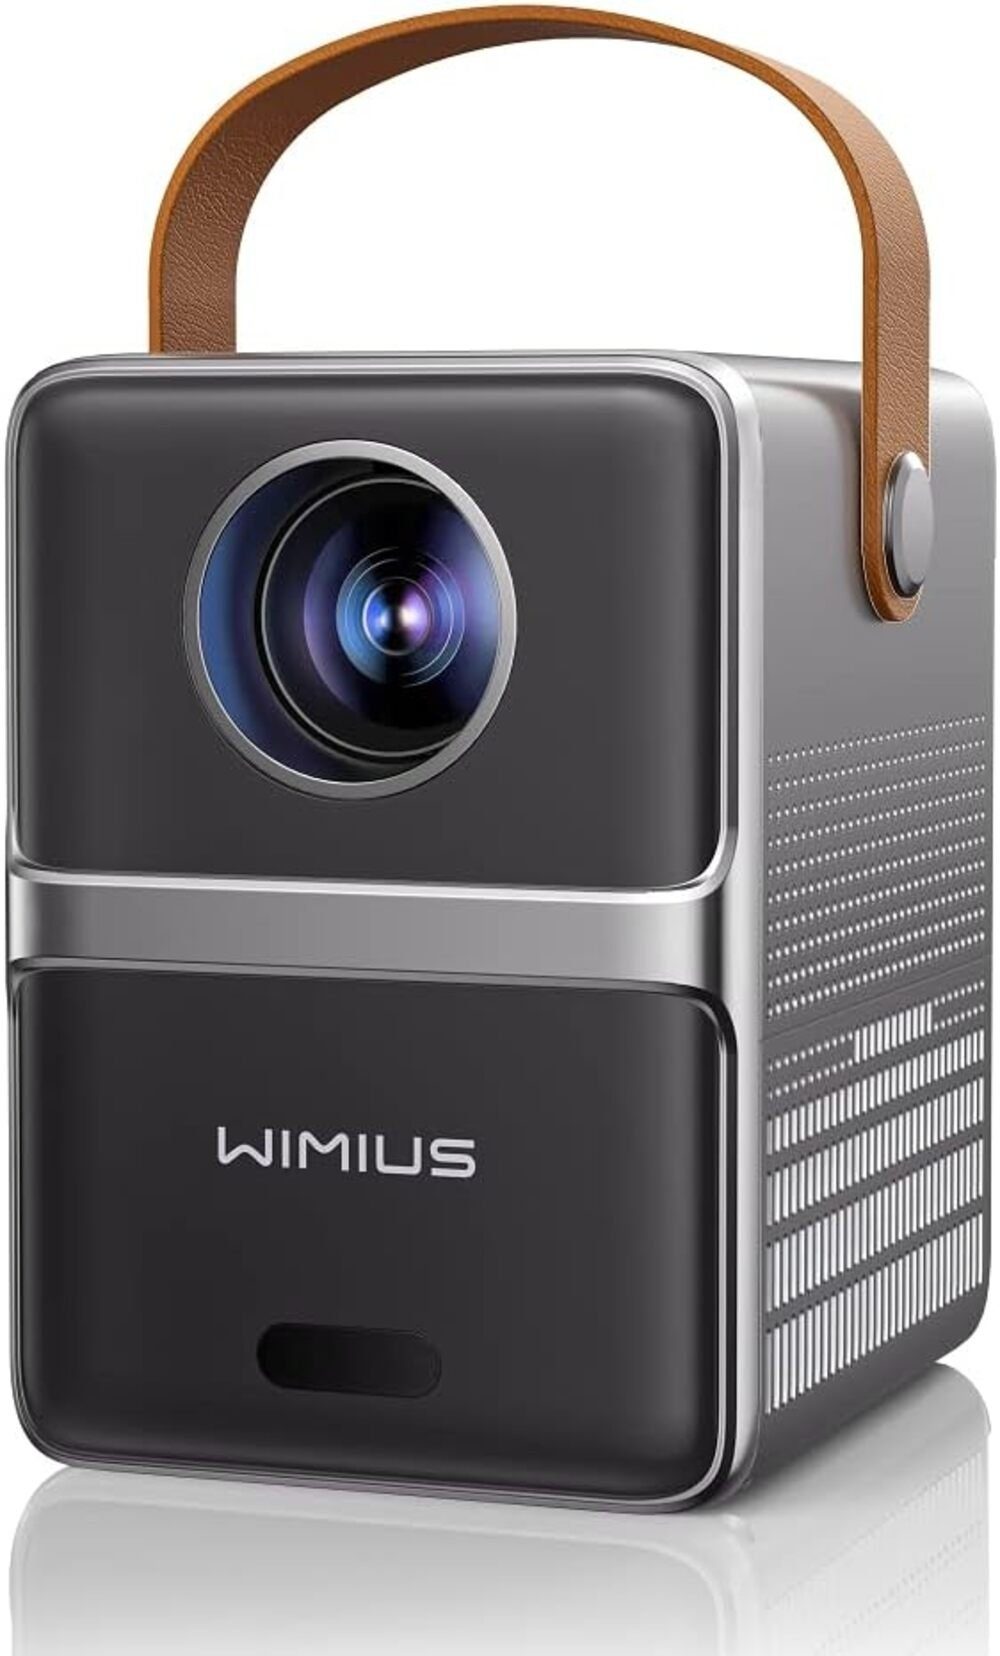 lumen wimius WiMiUS Portabler Projektor tragbar videoprojektor fokus px, Elektrischer (1920x1080 für) kleiner